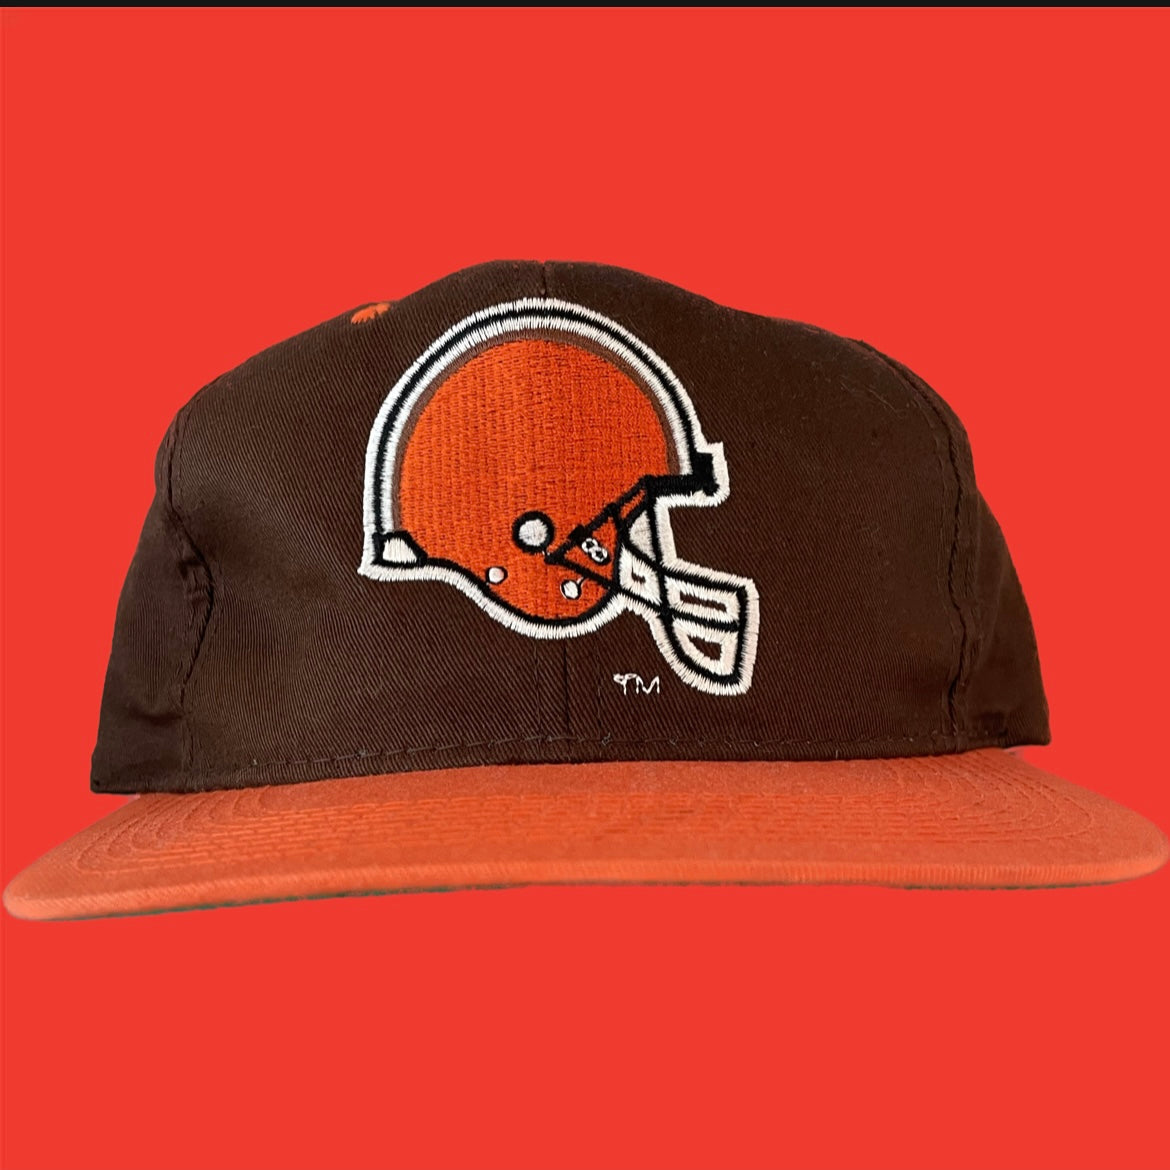 The Browns Helmet Snapback